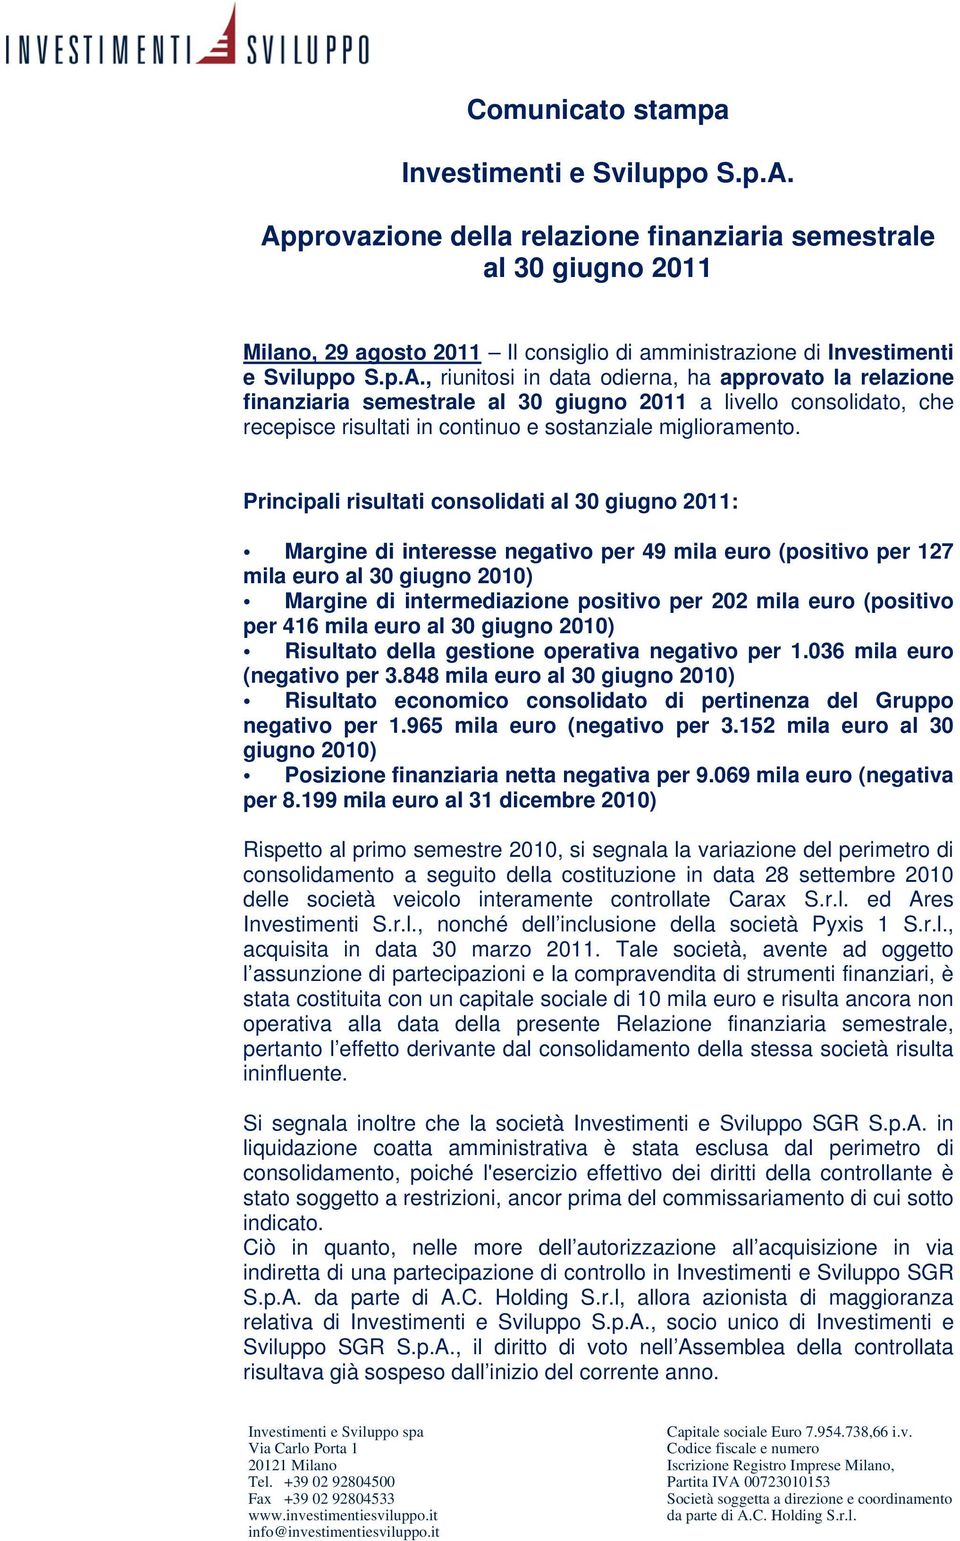 Principali risultati consolidati al 30 giugno 2011: Margine di interesse negativo per 49 mila euro (positivo per 127 mila euro al 30 giugno 2010) Margine di intermediazione positivo per 202 mila euro